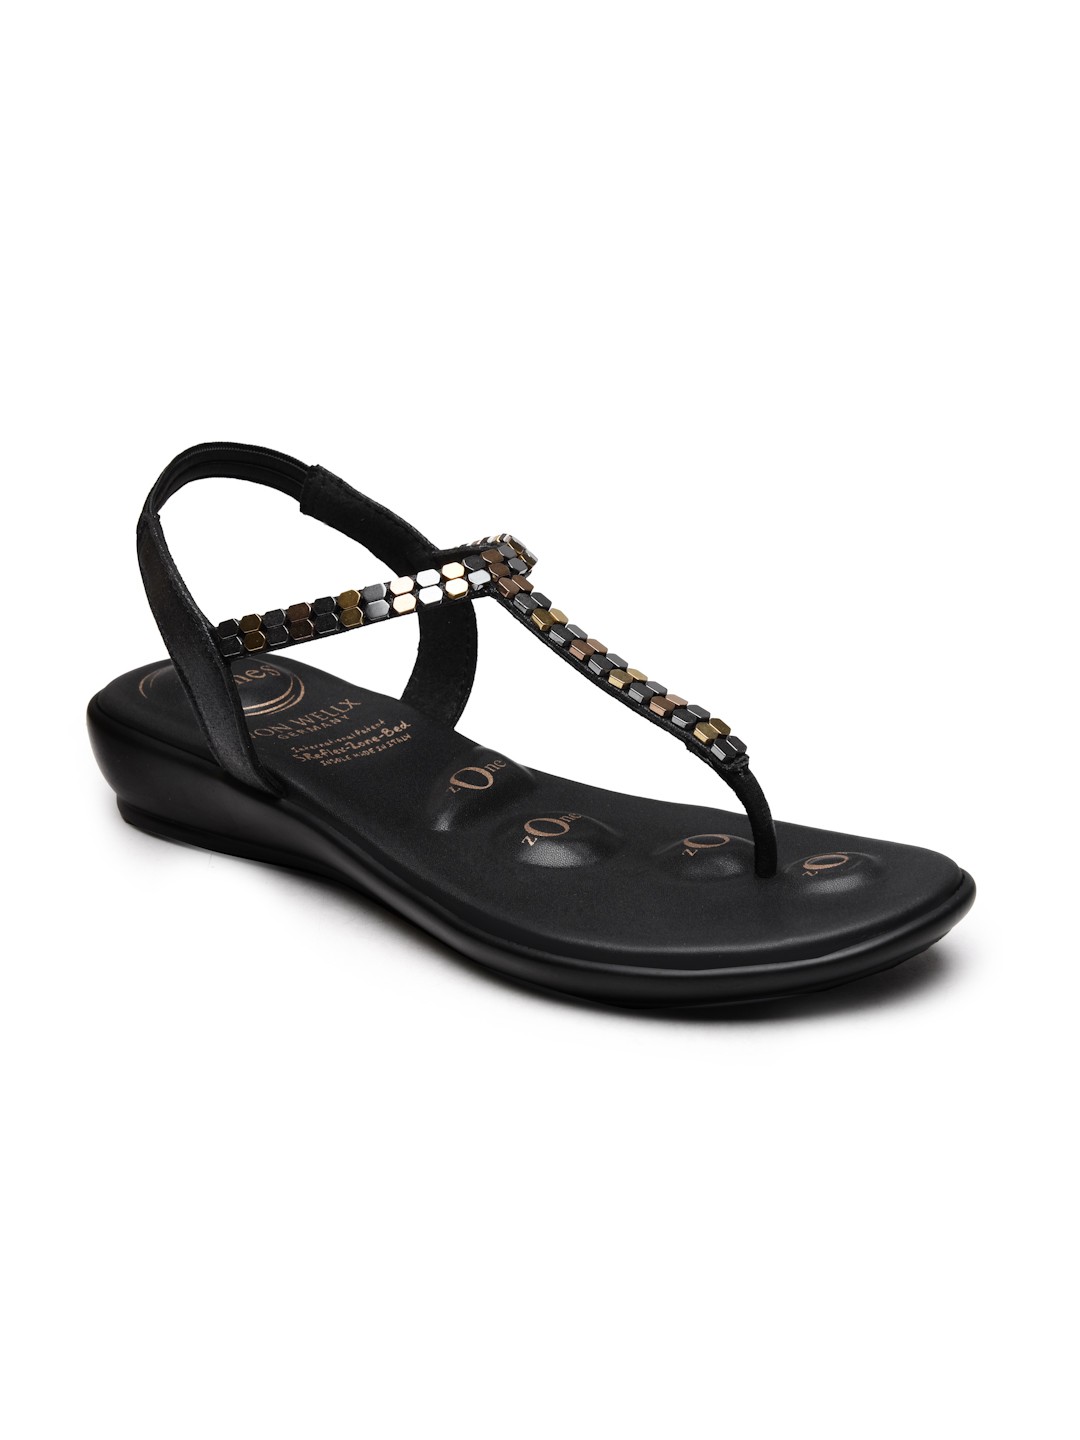 Buy Von Wellx Germany Comfort Women's Black Casual Sandals Regina Online in Dhanbad